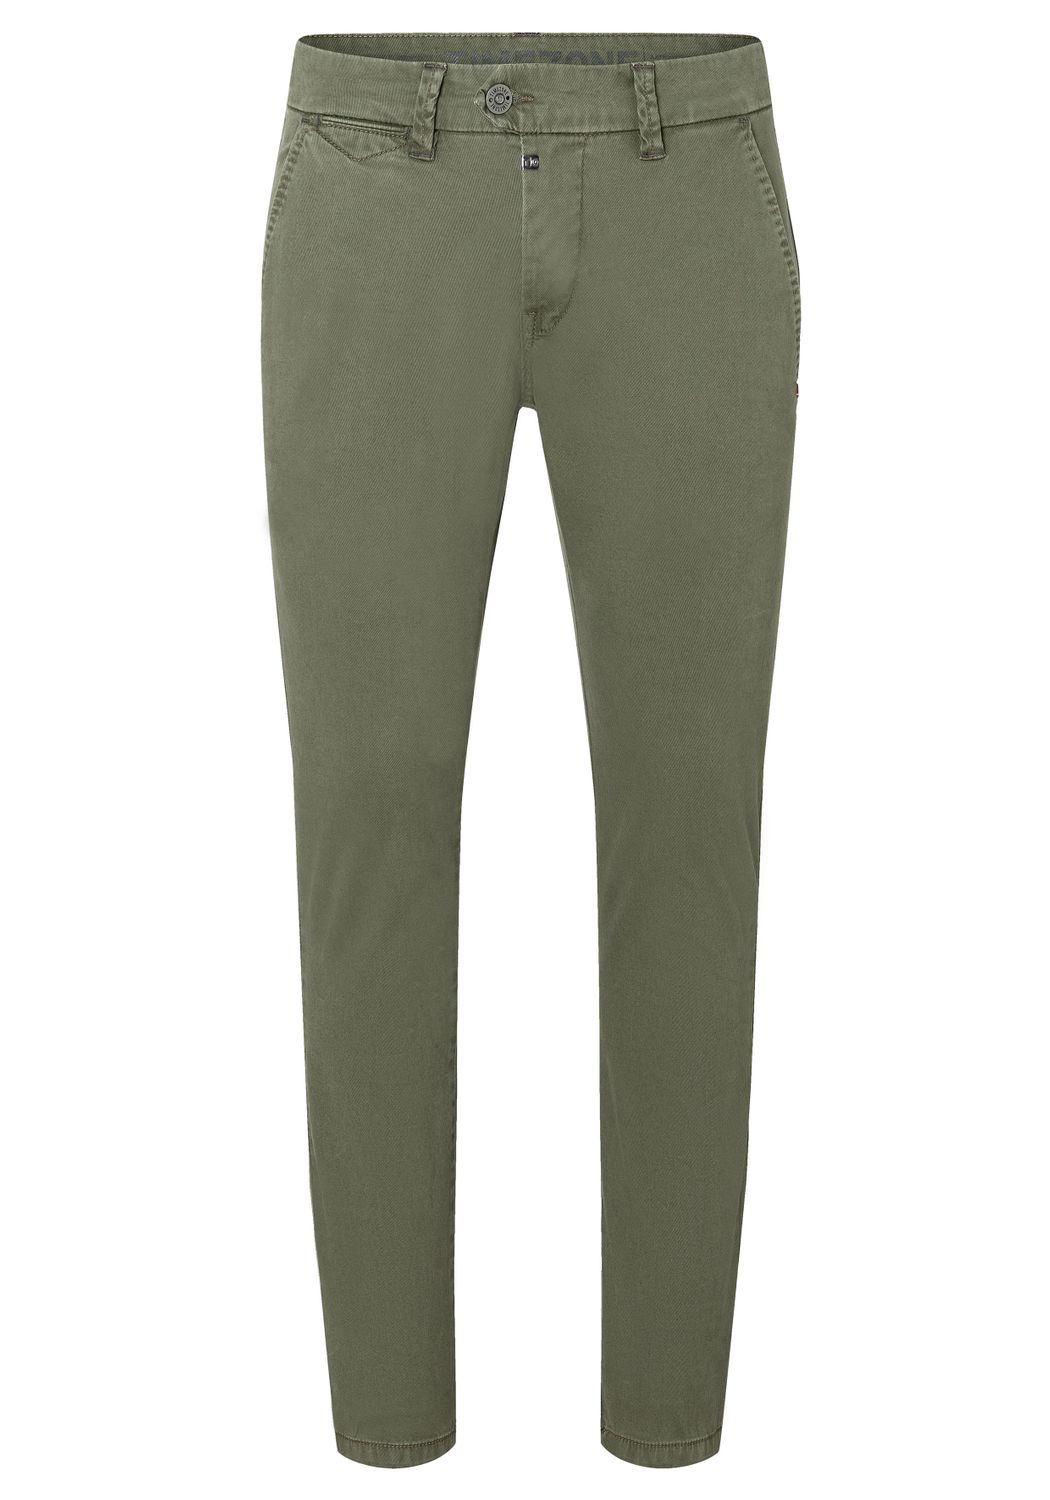 Тканевые брюки Timezone Stoff/Chino Slim JannoTZ slim, зеленый тканевые брюки tom tailor denim stoff chino chino mit gürtel slim бежевый